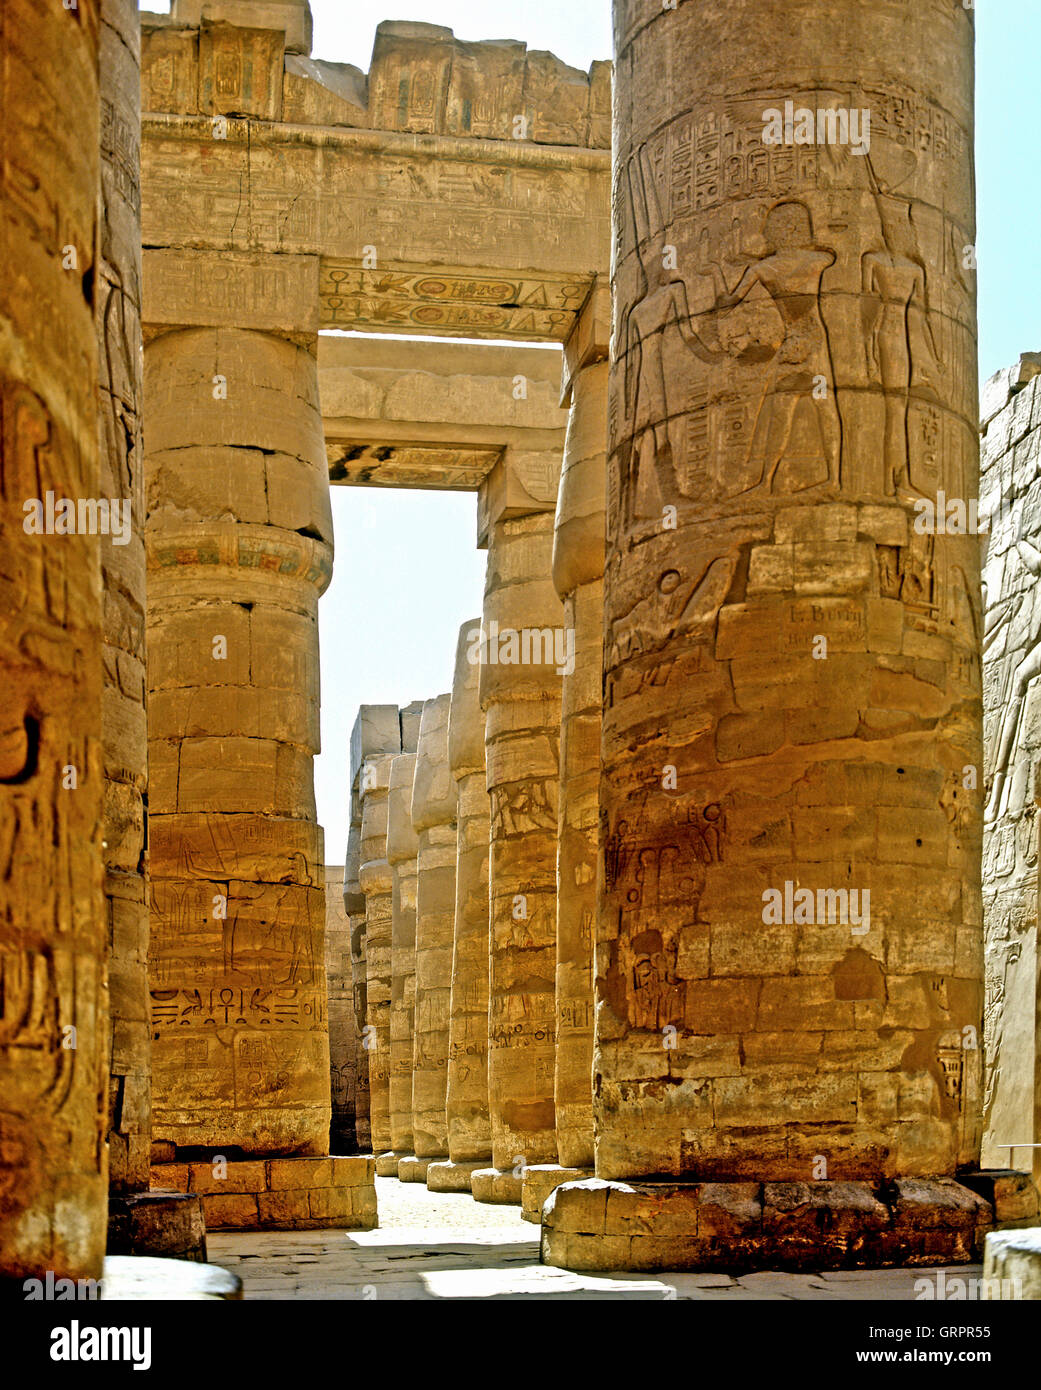 Salle hypostyle, Temple d'Amon-Ra, Karnak, Haute Egypte Banque D'Images